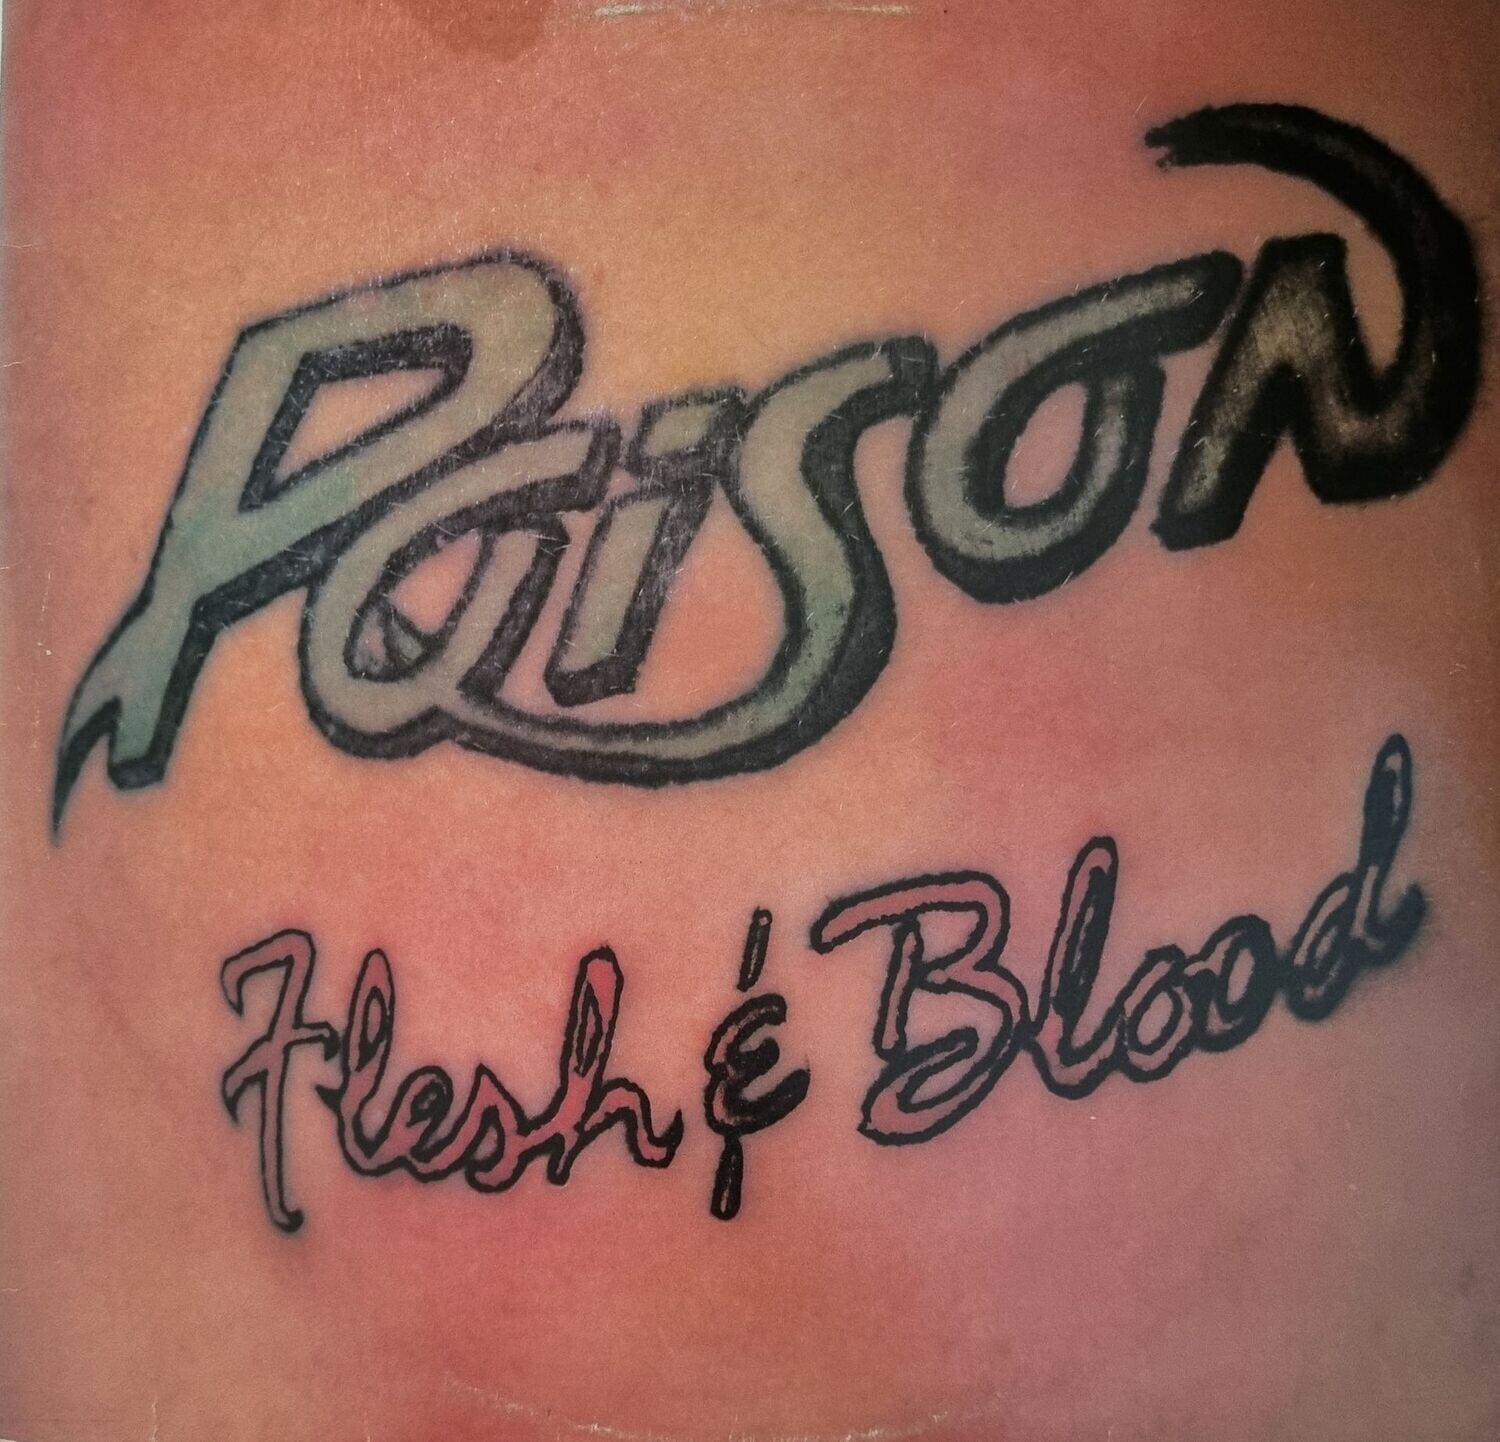 Poison – Flesh & Blood (1990)